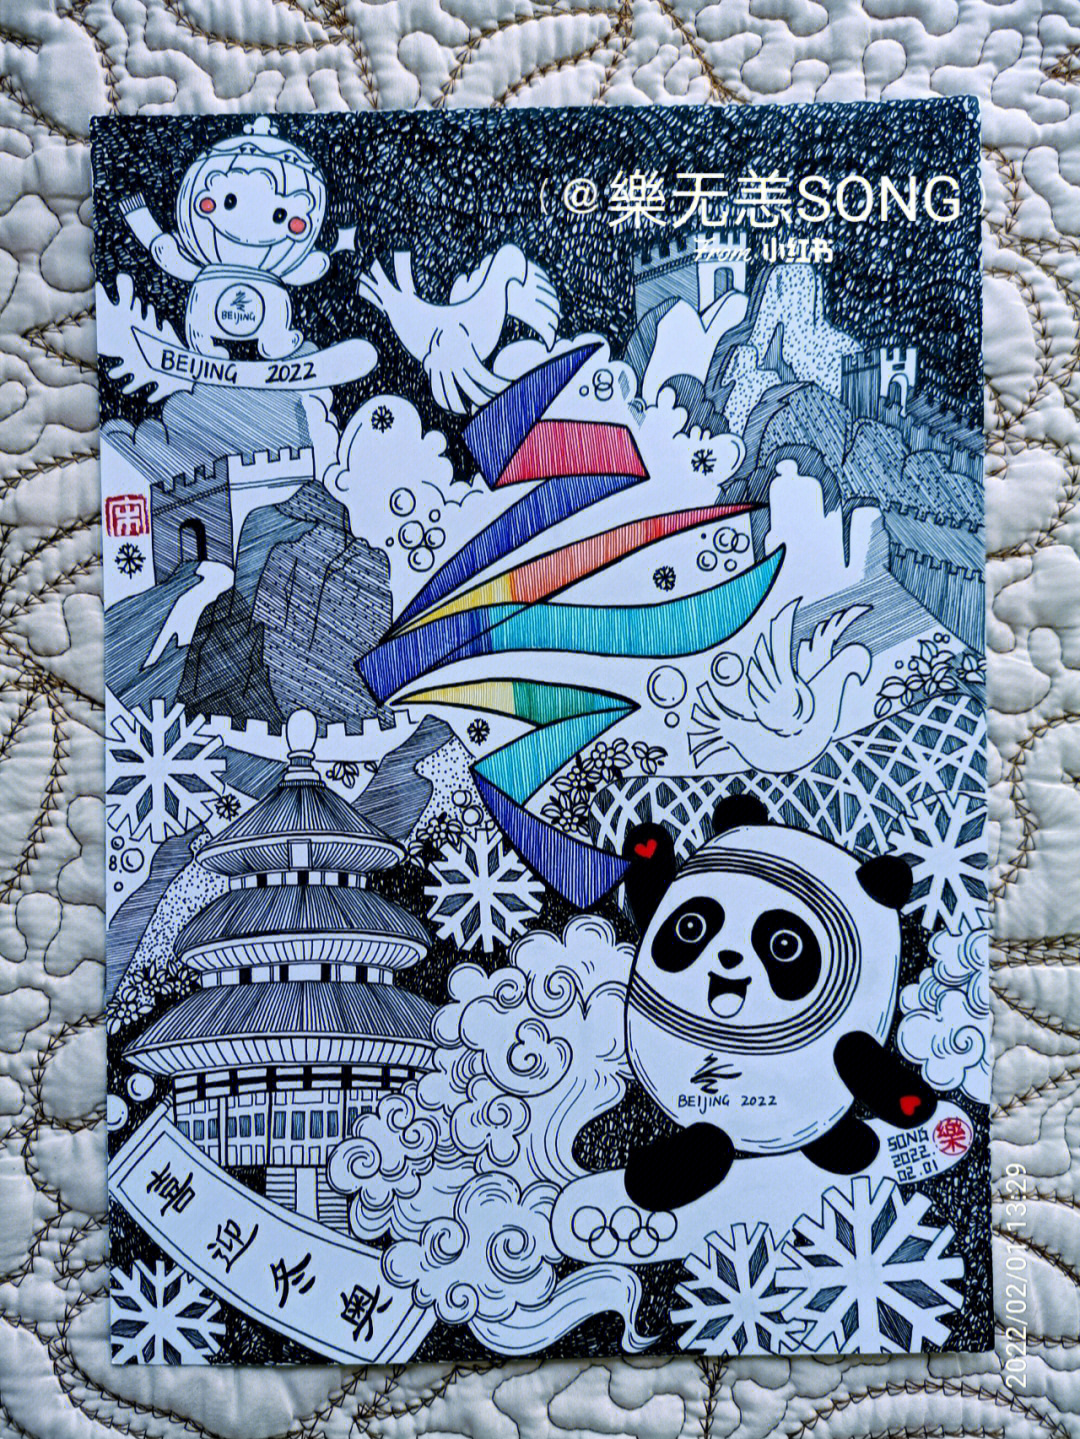 北京冬奥会主题画黑白图片